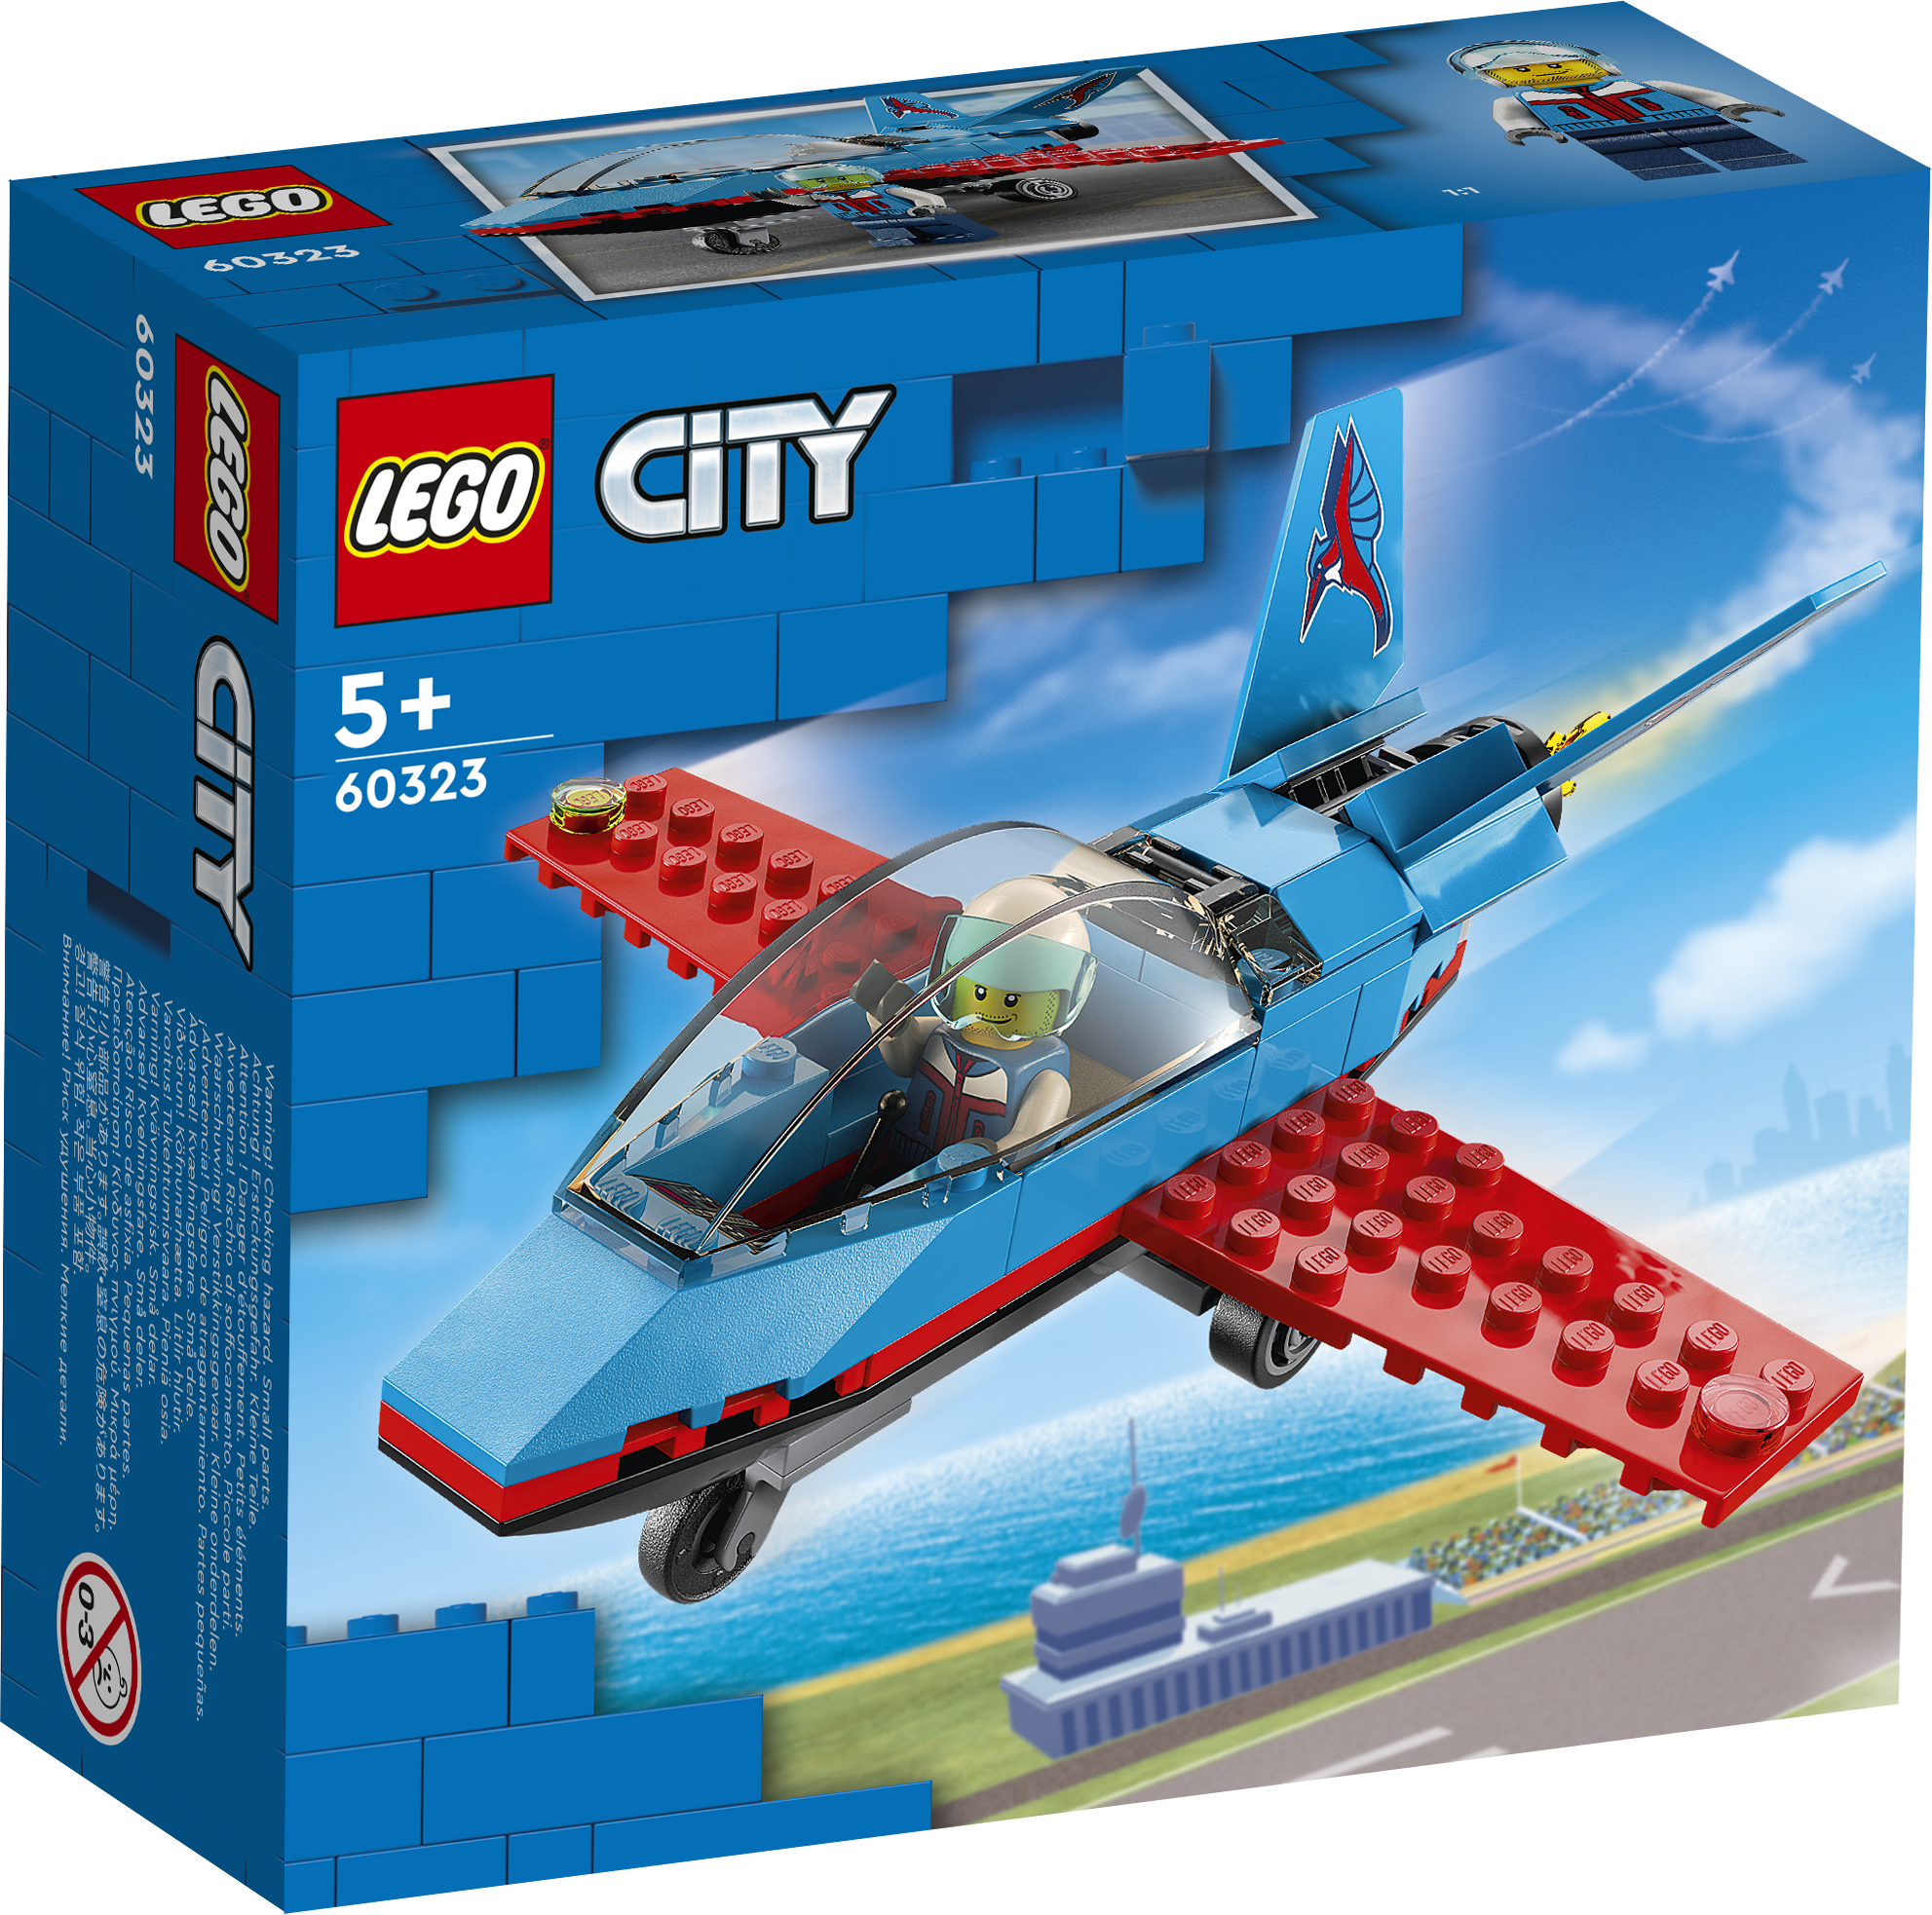 City Stuntfly - 60323